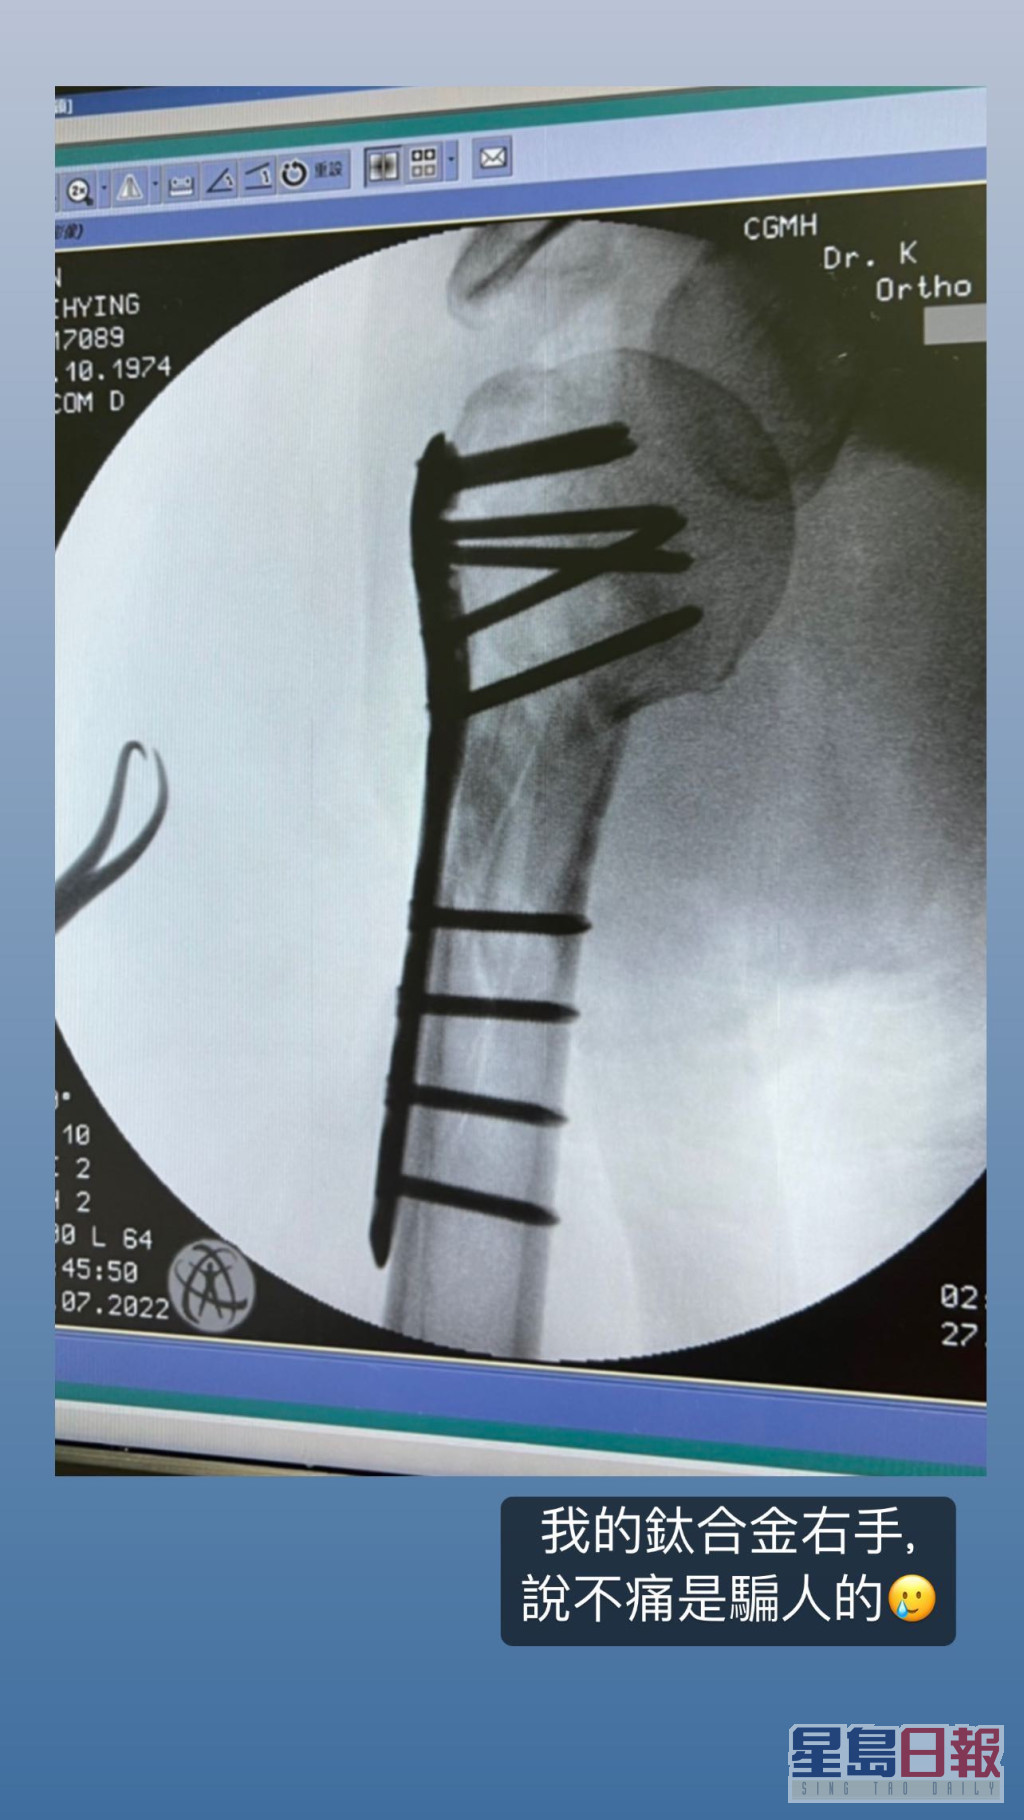 林志颖曾公开右臂的X光相，见到一排钢钉及钢板。  ​